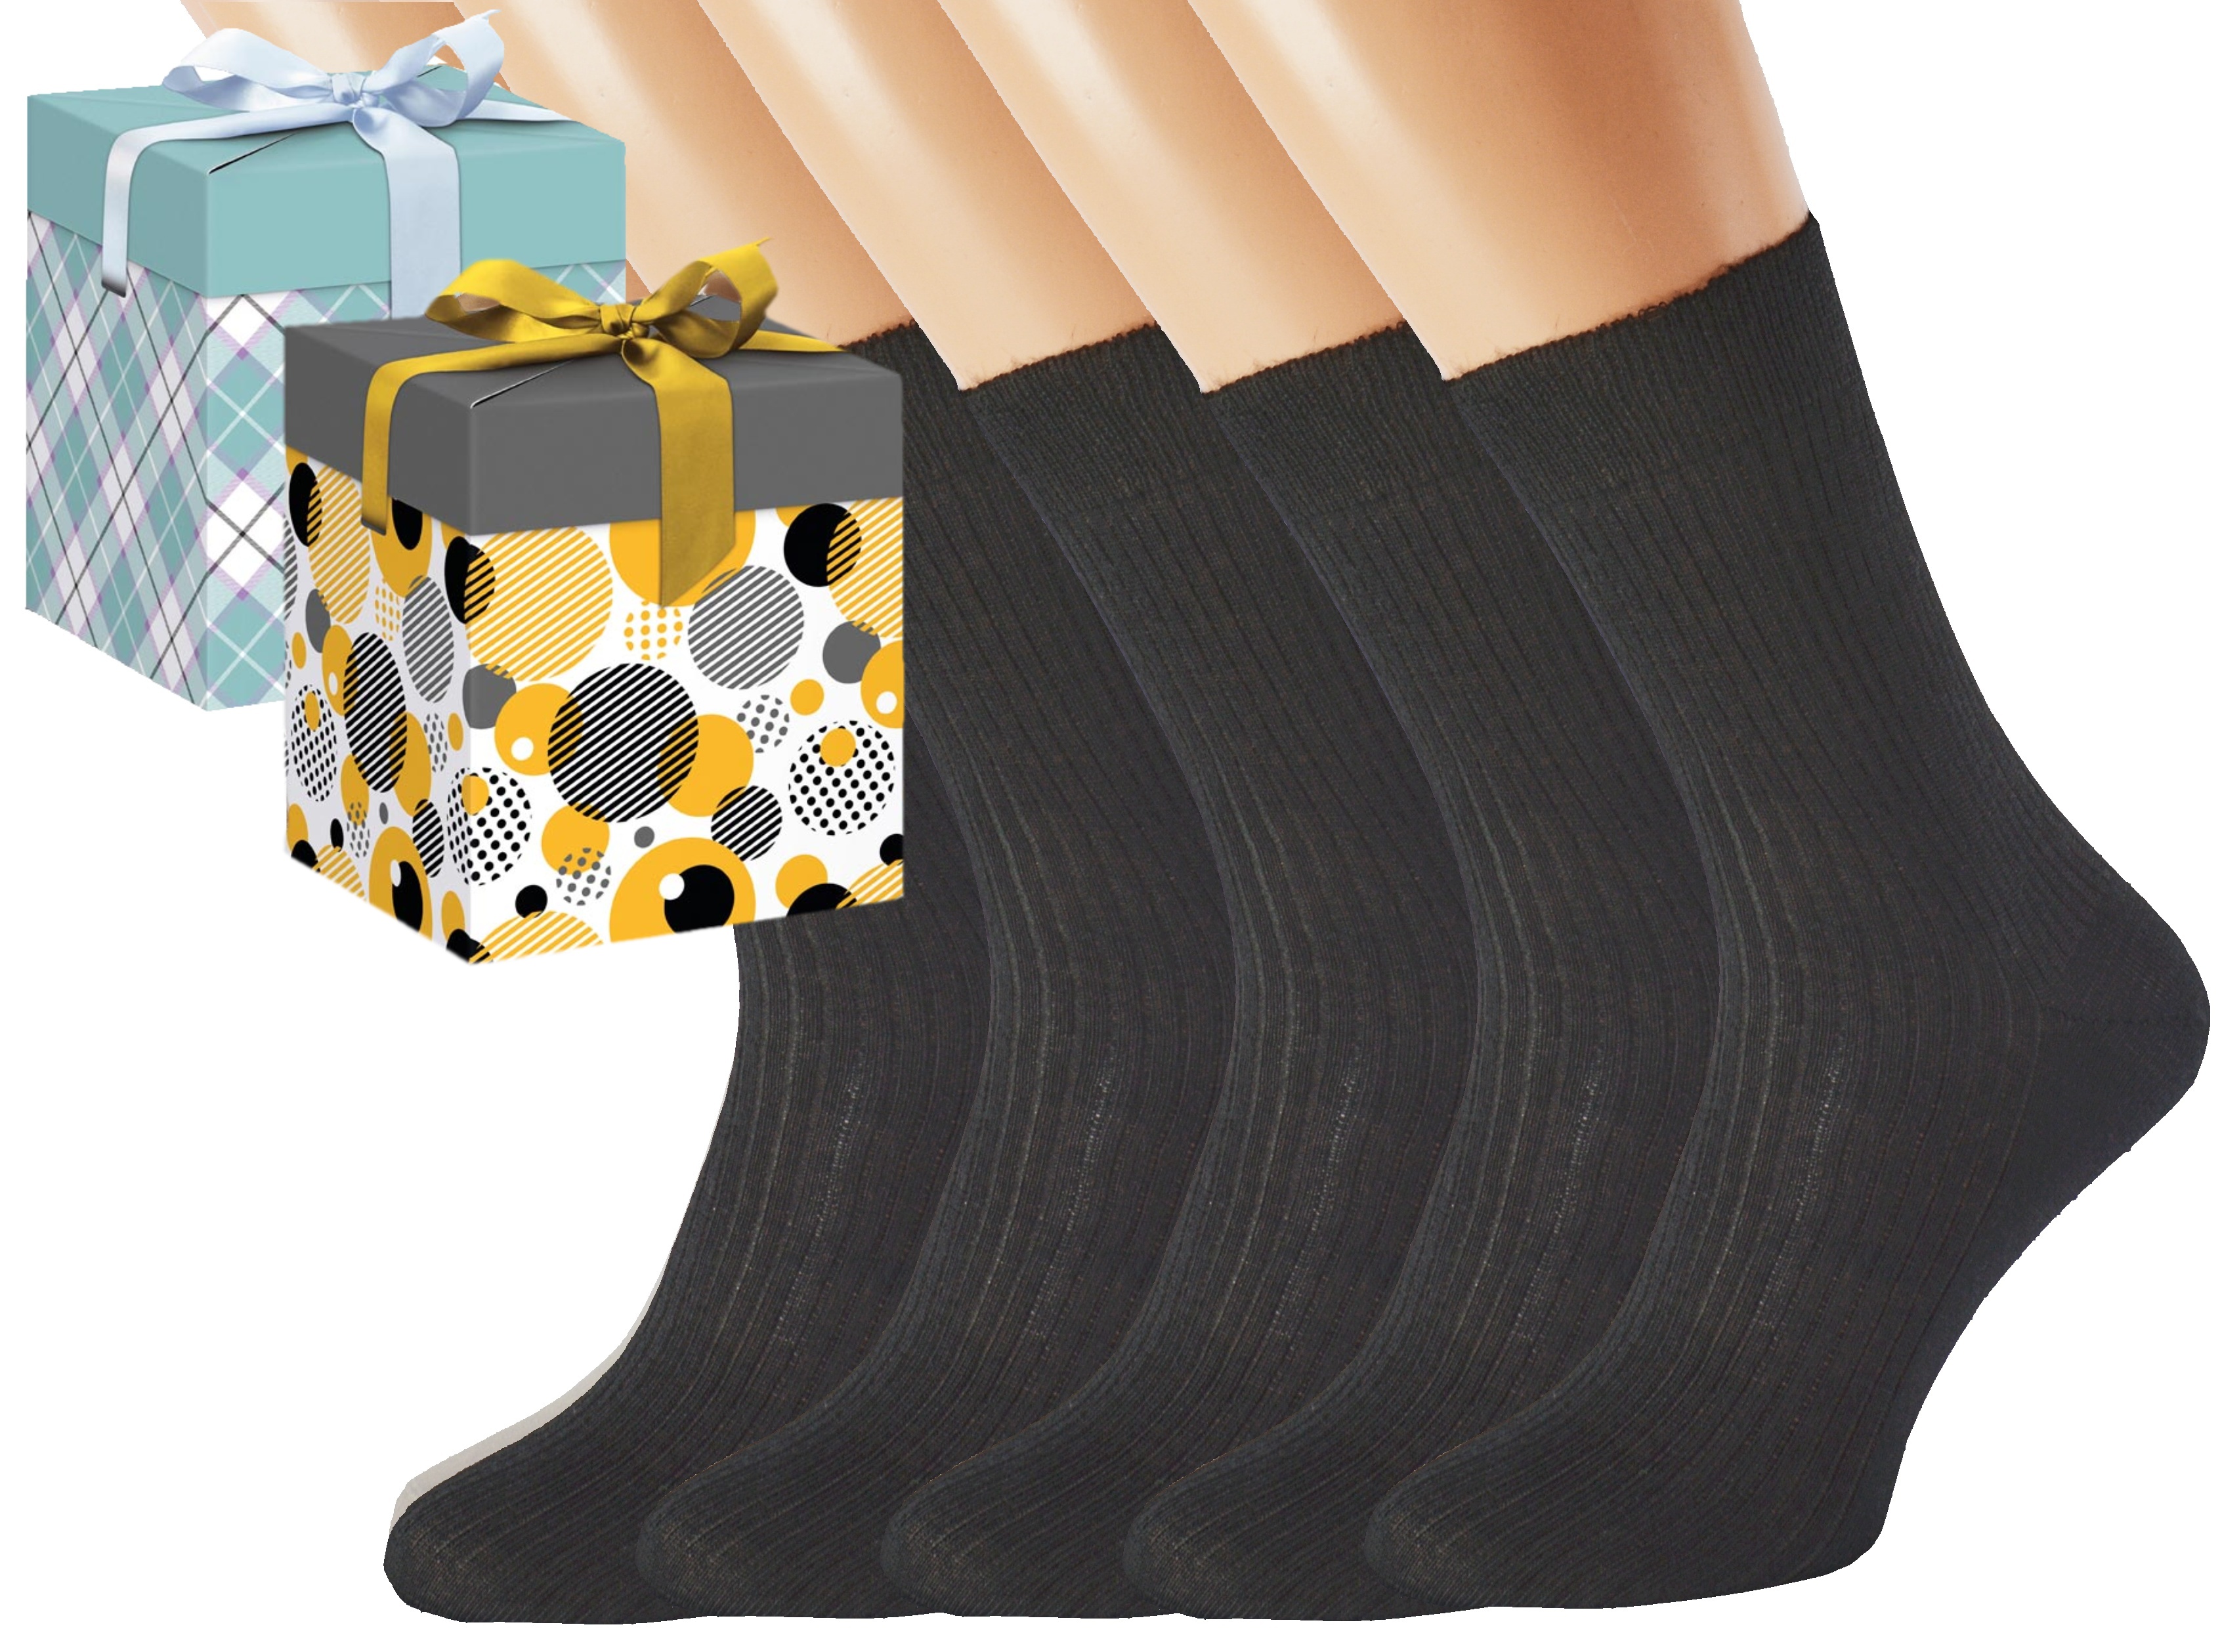 Dárkové balení 5 párů zdravotních ponožek LUKÁŠ Barva: Černé, Velikost: EUR 43-45 (UK 9-10), Zvolte variantu dárkového balení: Mint kostkovaná